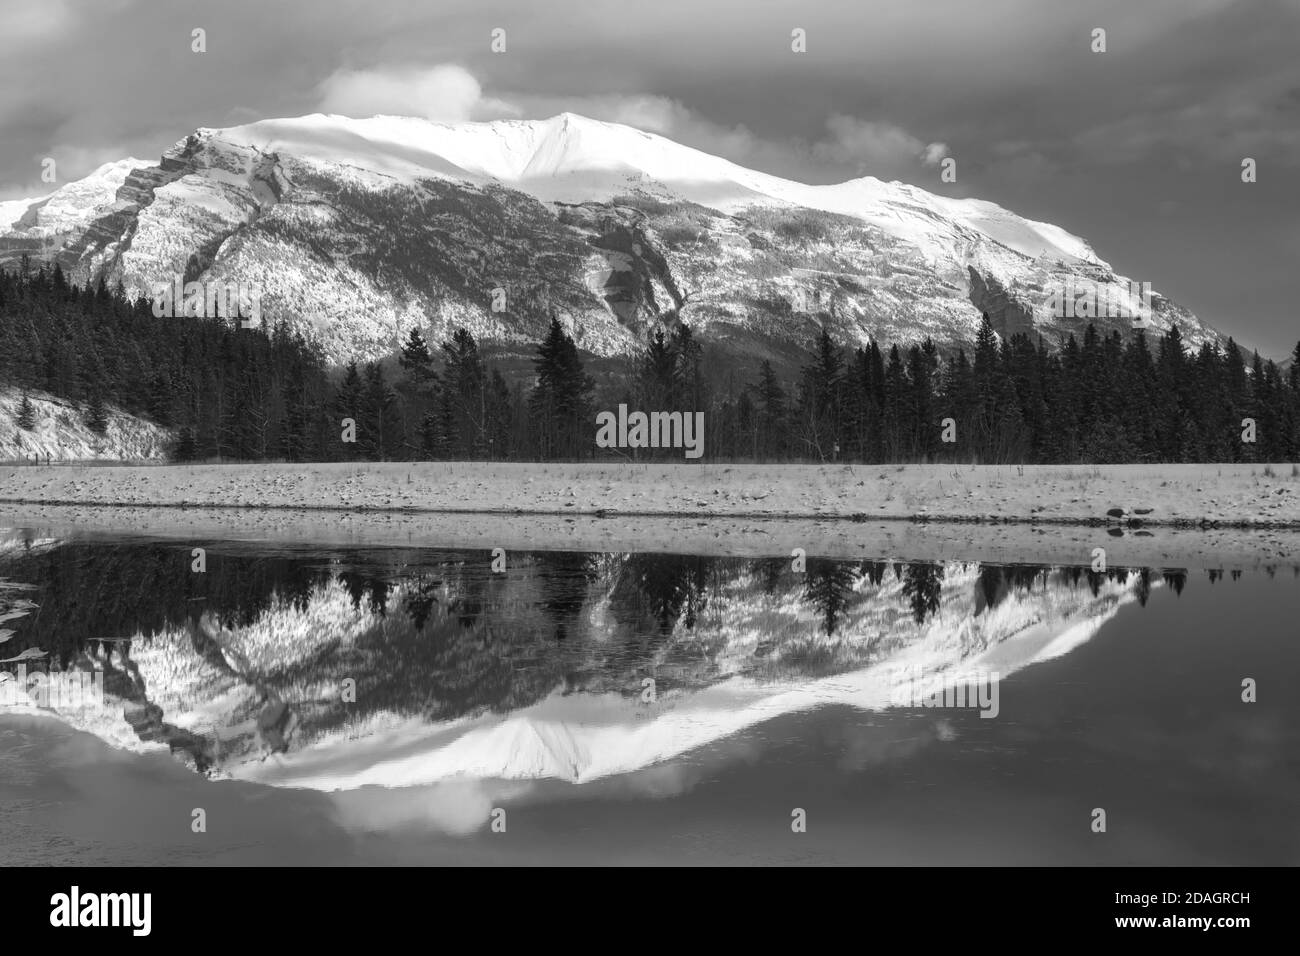 Monochrome oder Schwarzweiß-Landschaftsaufnahme des Snowy Mountain Peak, reflektiert im ruhigen und kalten Wasser des Sees über Canmore, Alberta, Kanadische Rockies Stockfoto